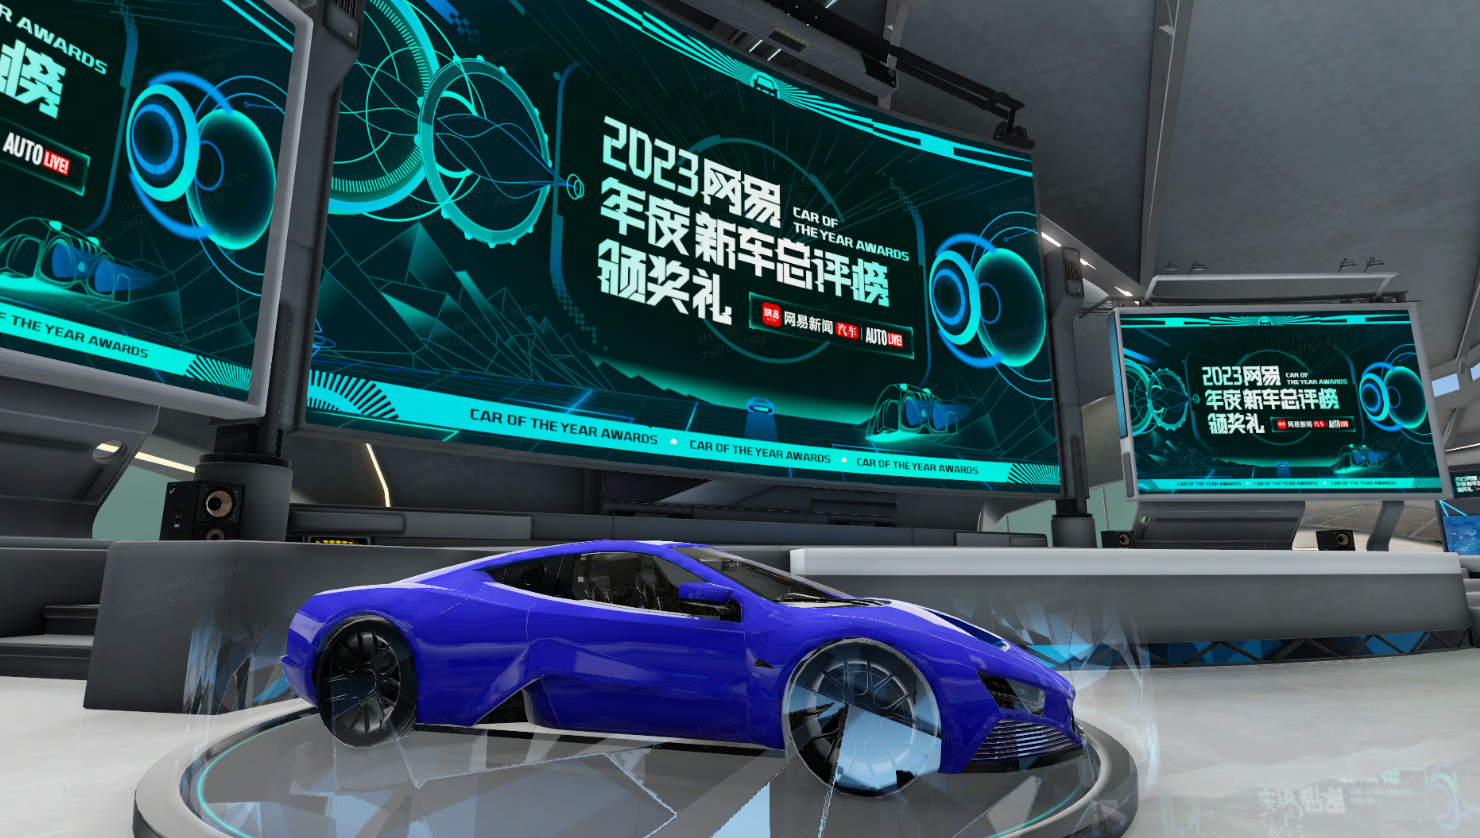 这是一张展示蓝色概念跑车的图片，背景有未来感的屏幕显示着2023年的信息，整体氛围科技感十足。